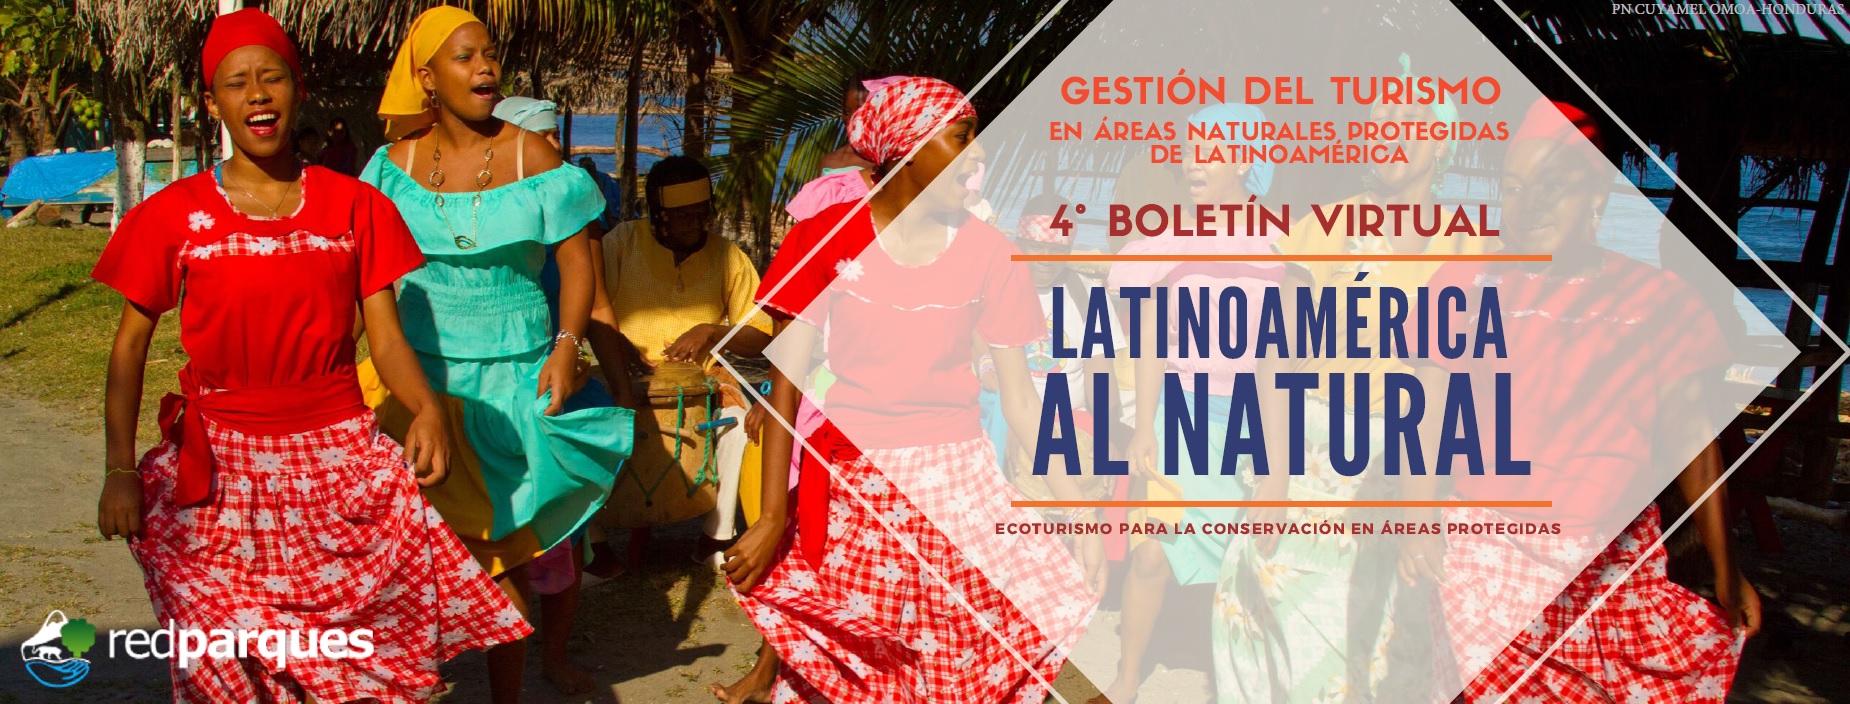 IV edición del boletín virtual “Latinoamérica al Natural: Ecoturismo Para La Conservación en Áreas Protegidas”.